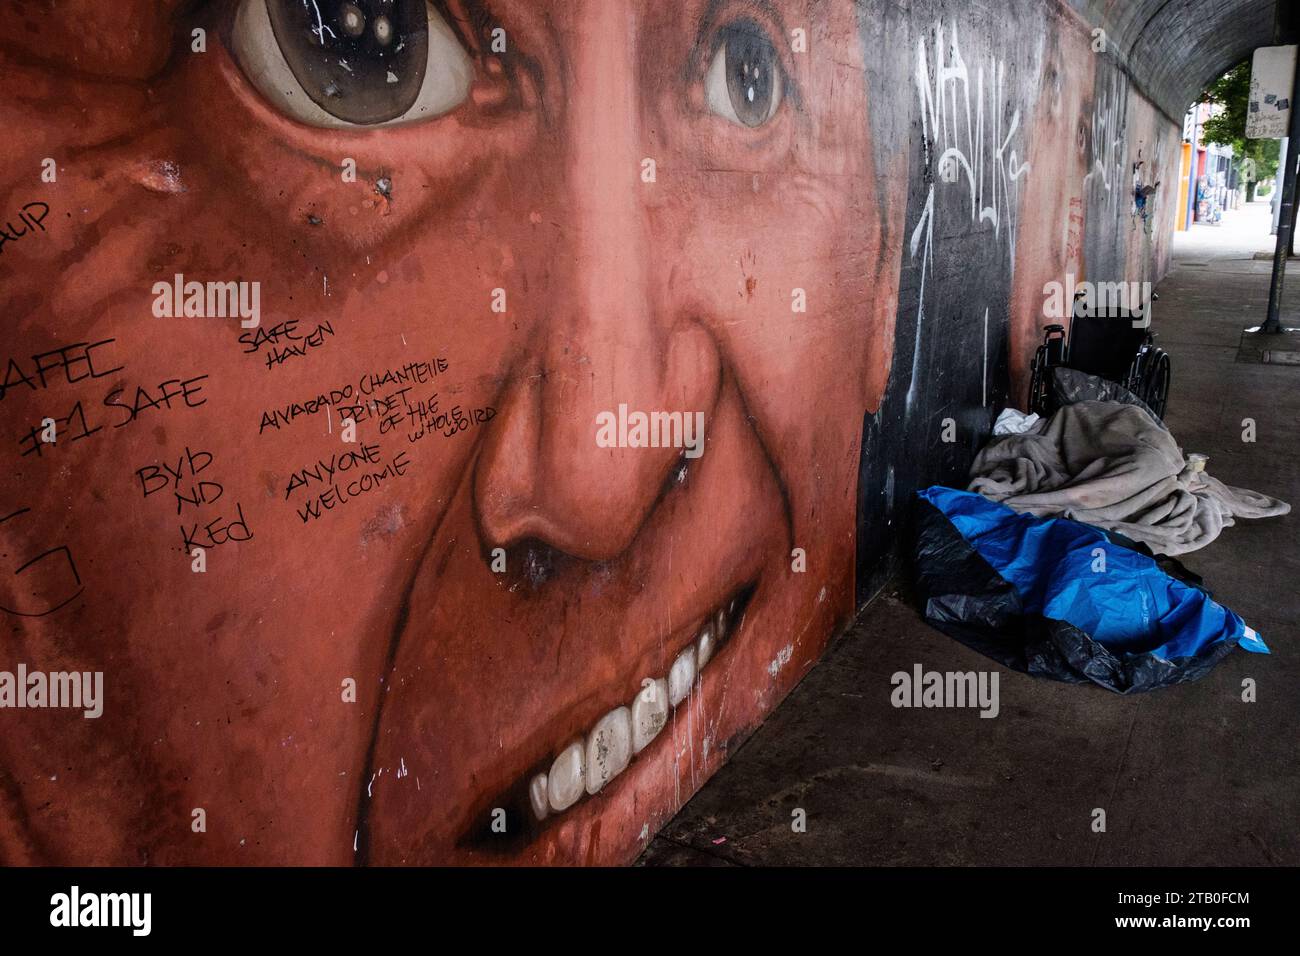 Equipo de personas sin hogar en s calle debajo de un mural en Los Ángeles, California, EE.UU. Foto de stock